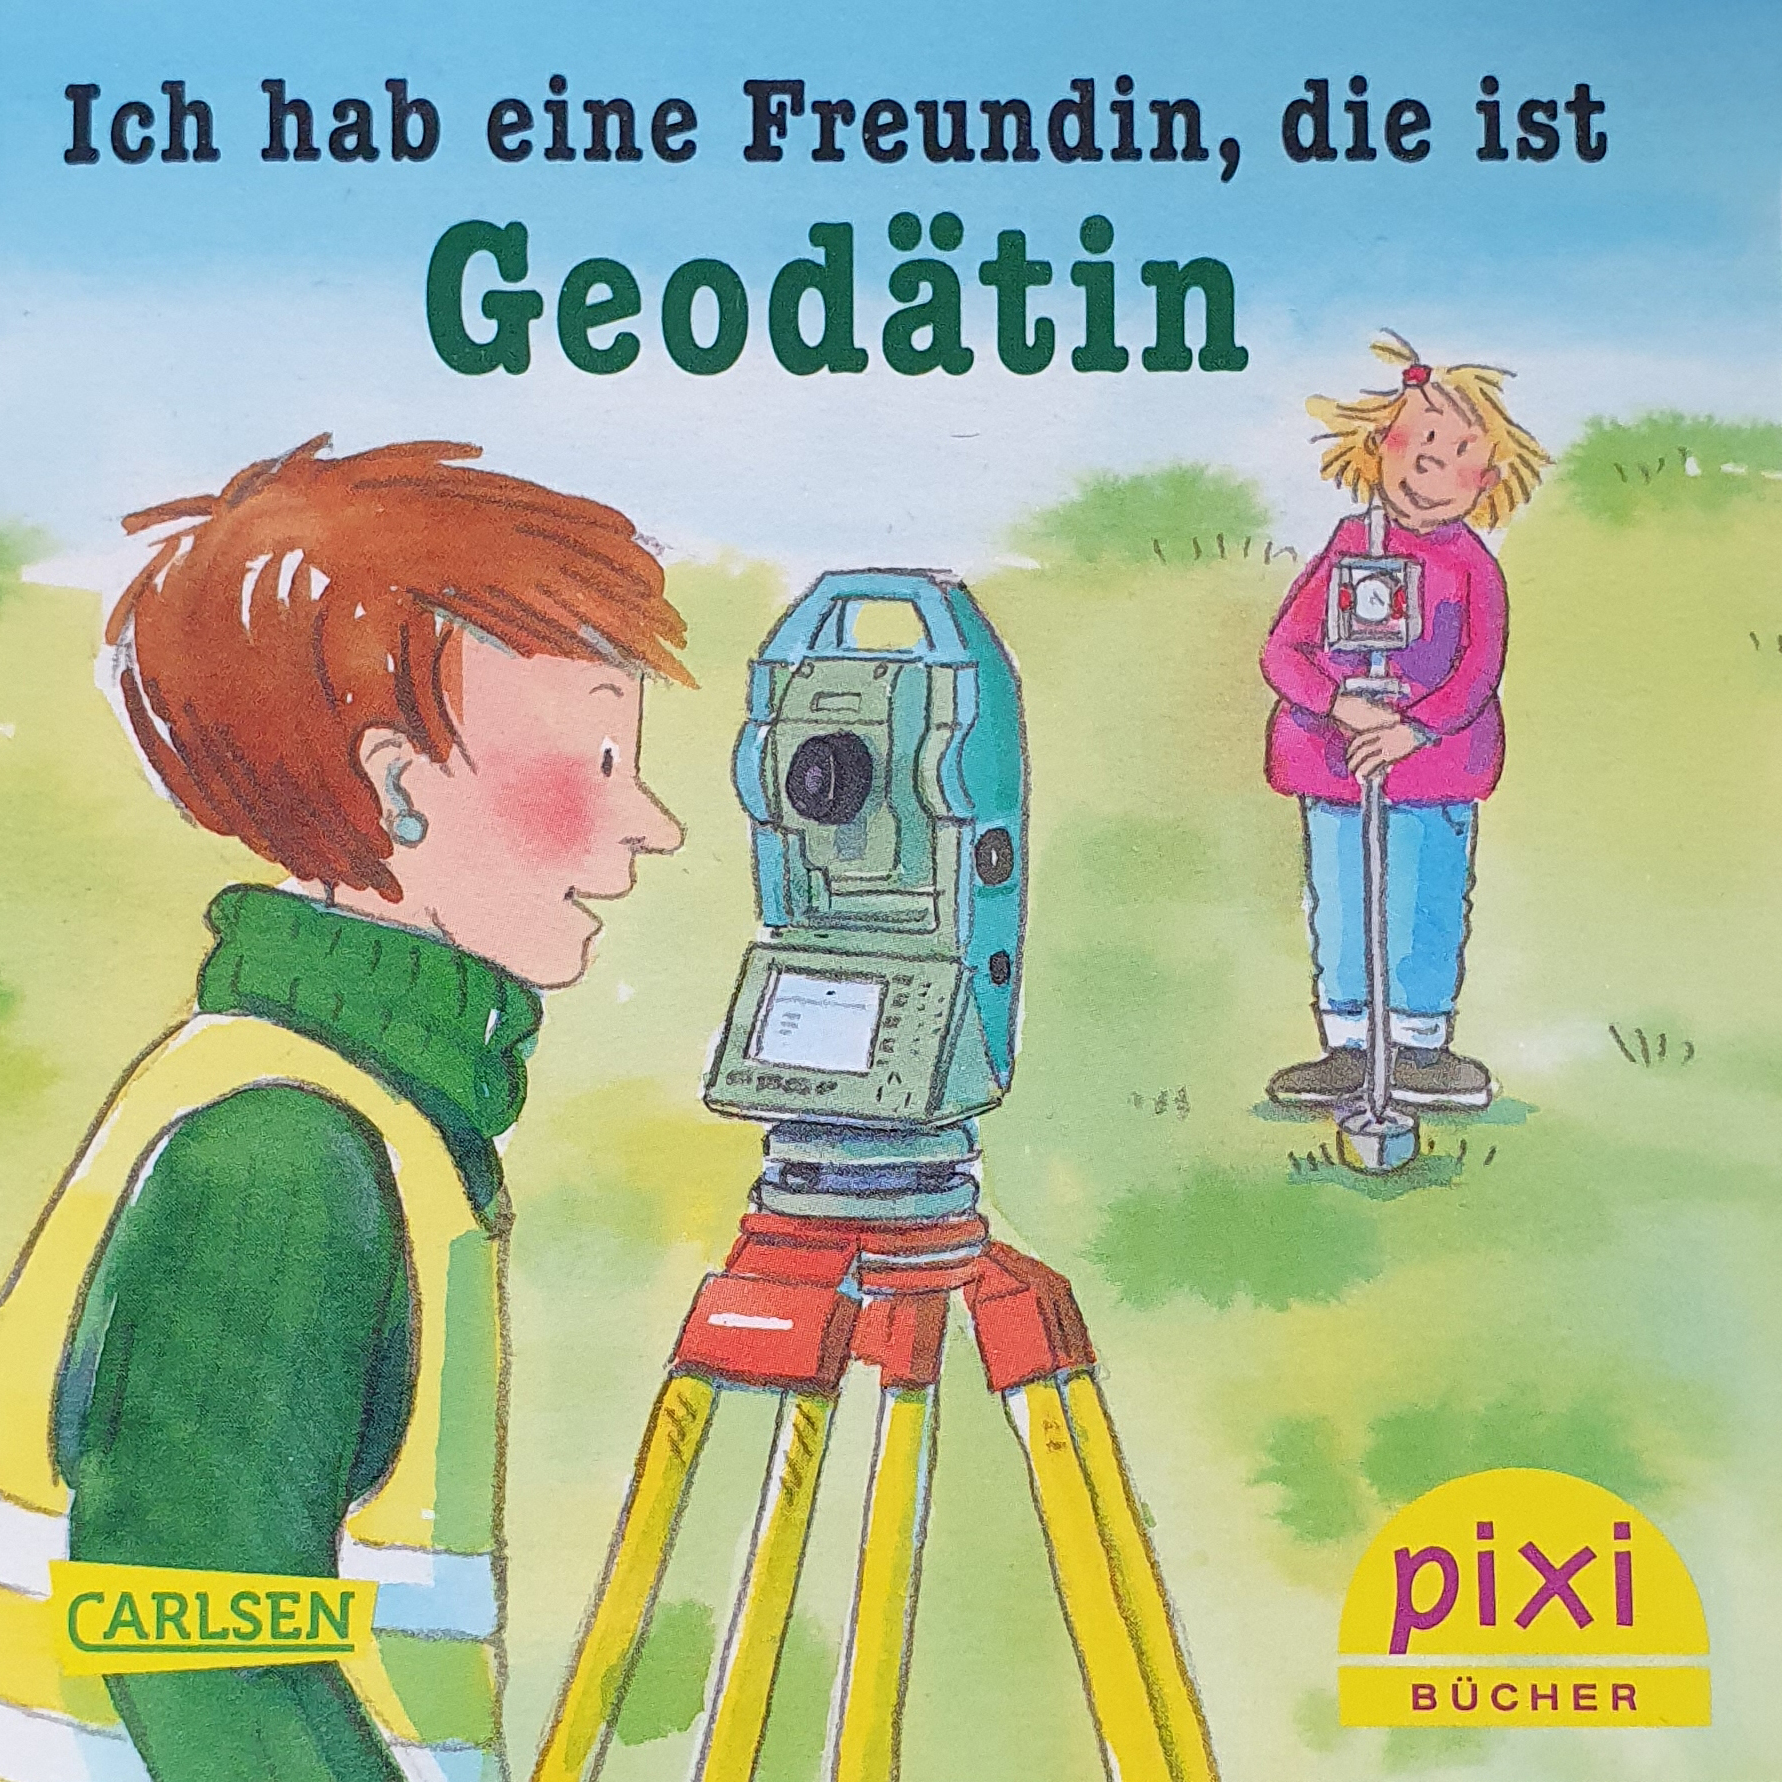 Pixi-Buch "Ich hab eine Freundin, die ist Geodätin"